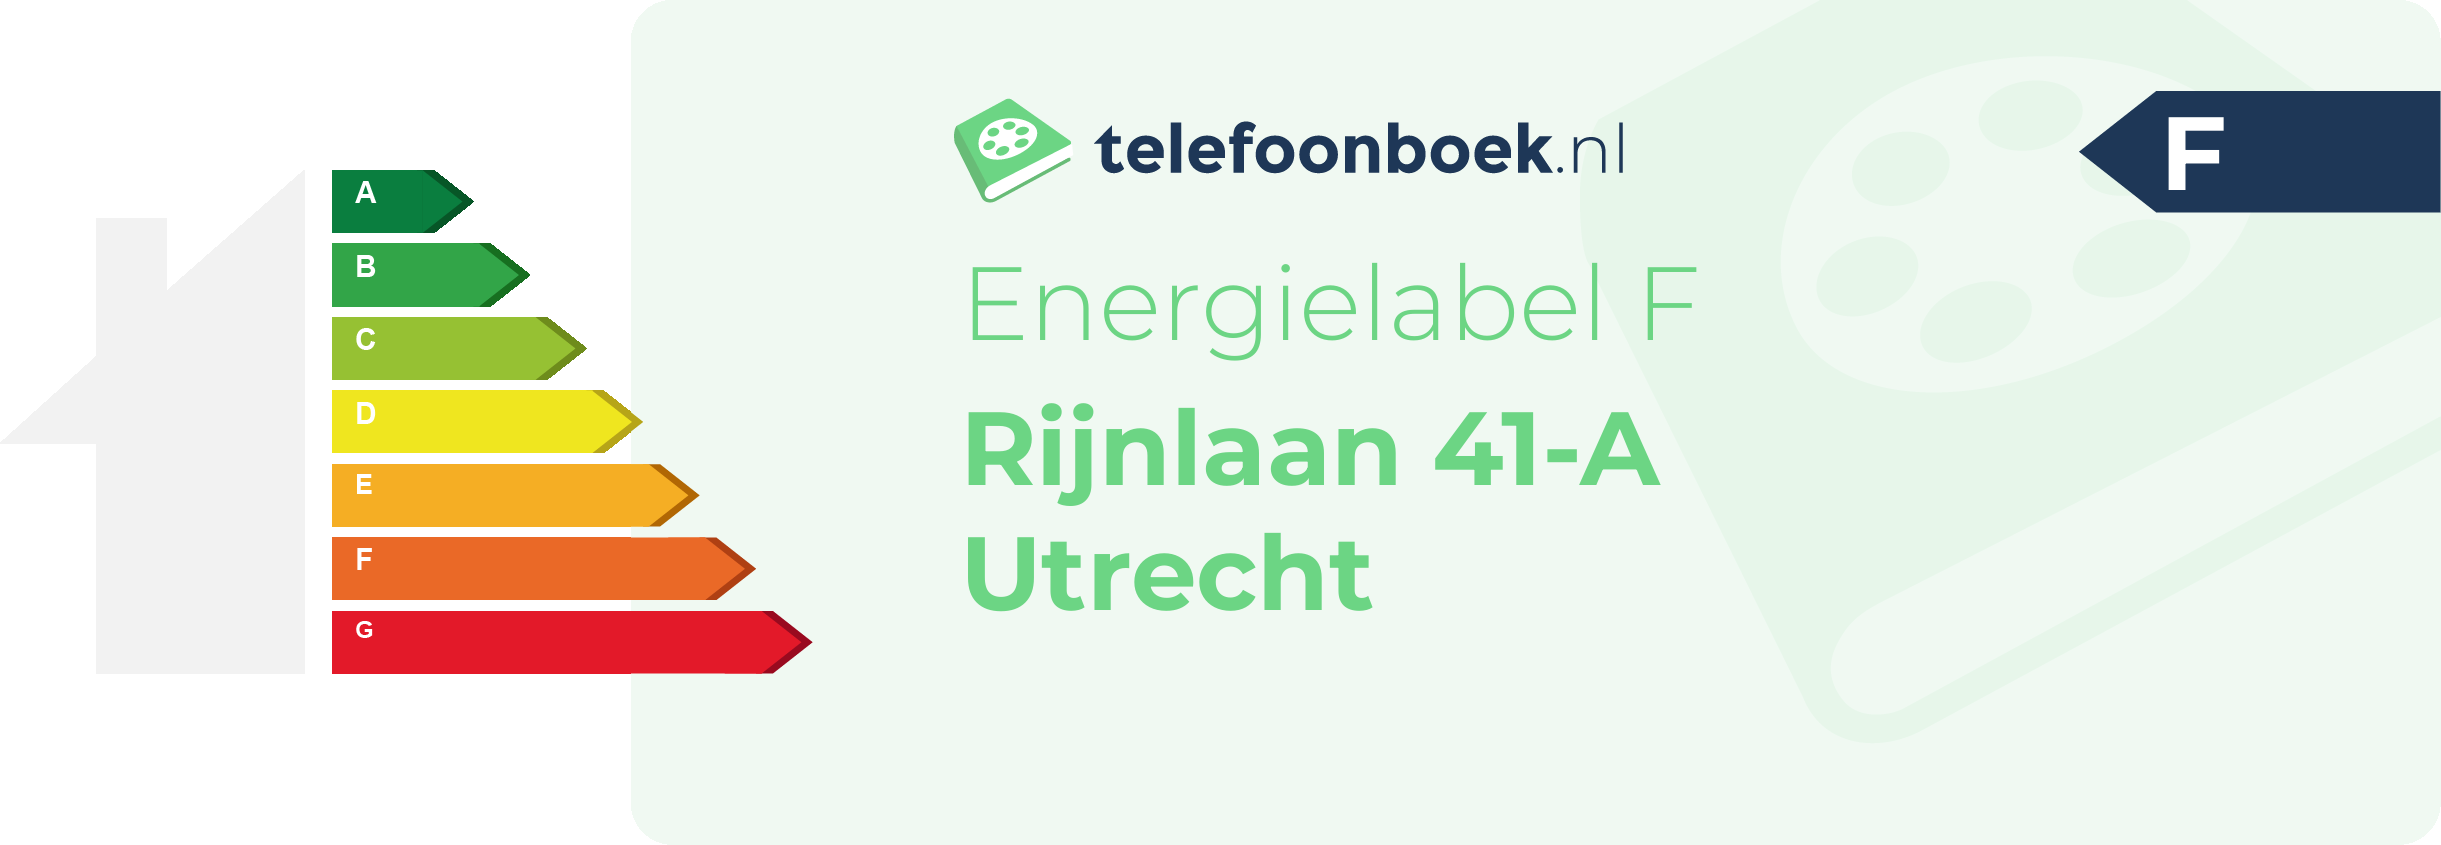 Energielabel Rijnlaan 41-A Utrecht